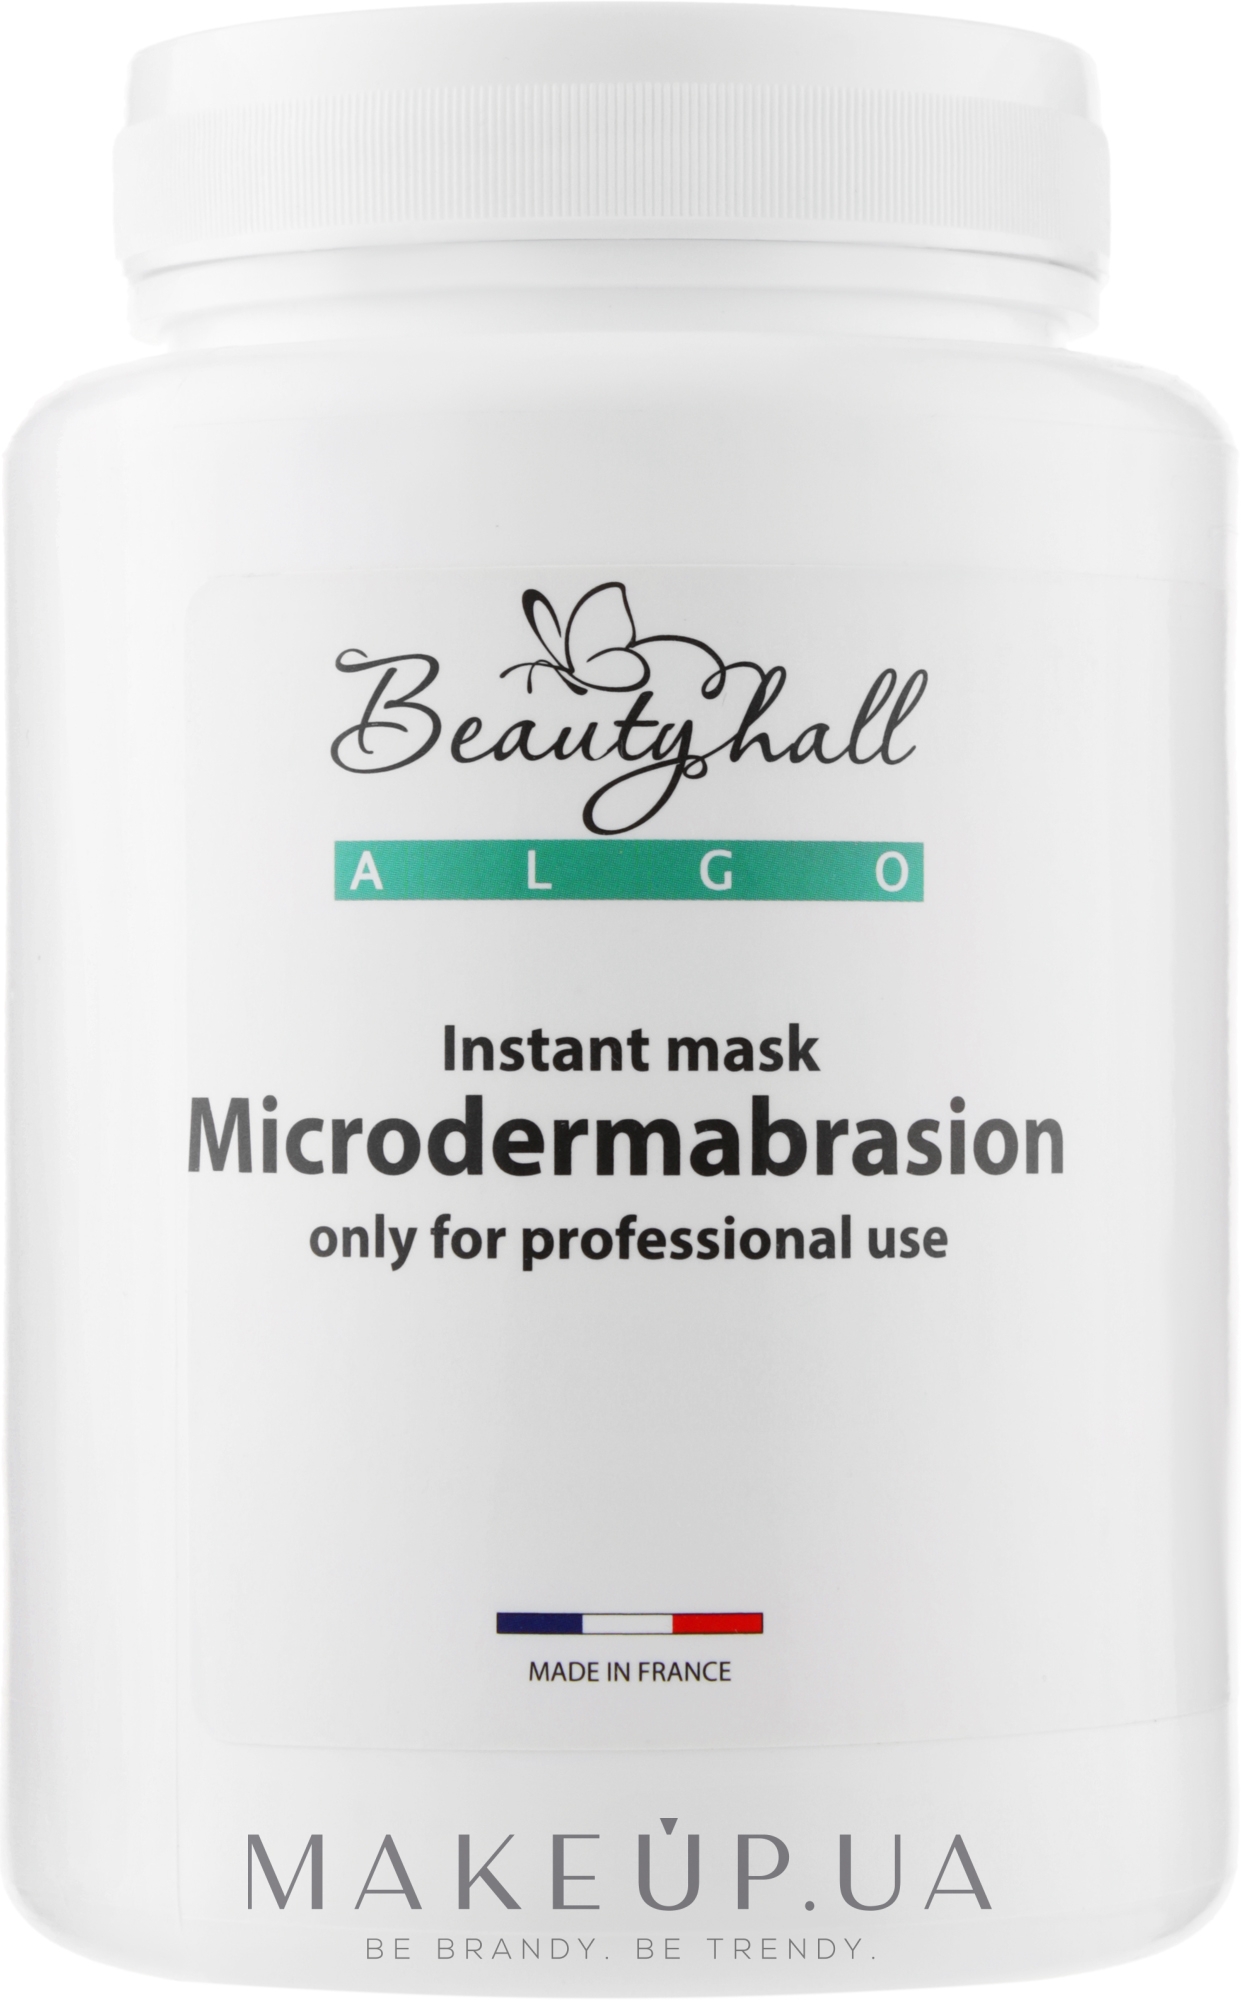 Кремовая маска "Микродермабразия" - Beautyhall Algo Instant Microdermabrasion Mask — фото 200g